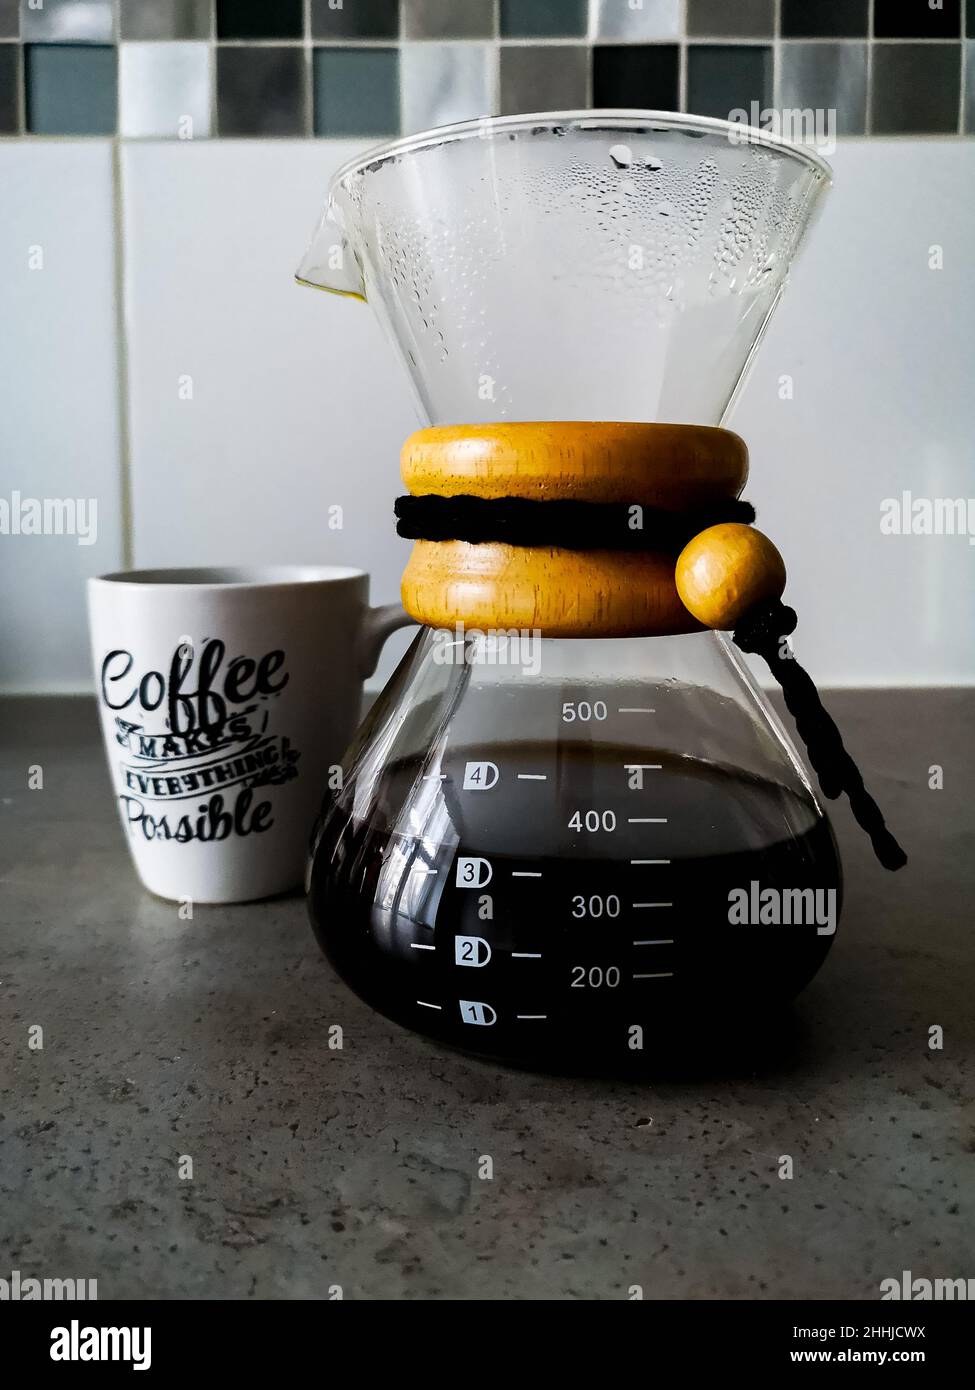 Un pot de café noir filtré de type chemex avec une tasse blanche avec des écrits calligraphiques pour le café Banque D'Images